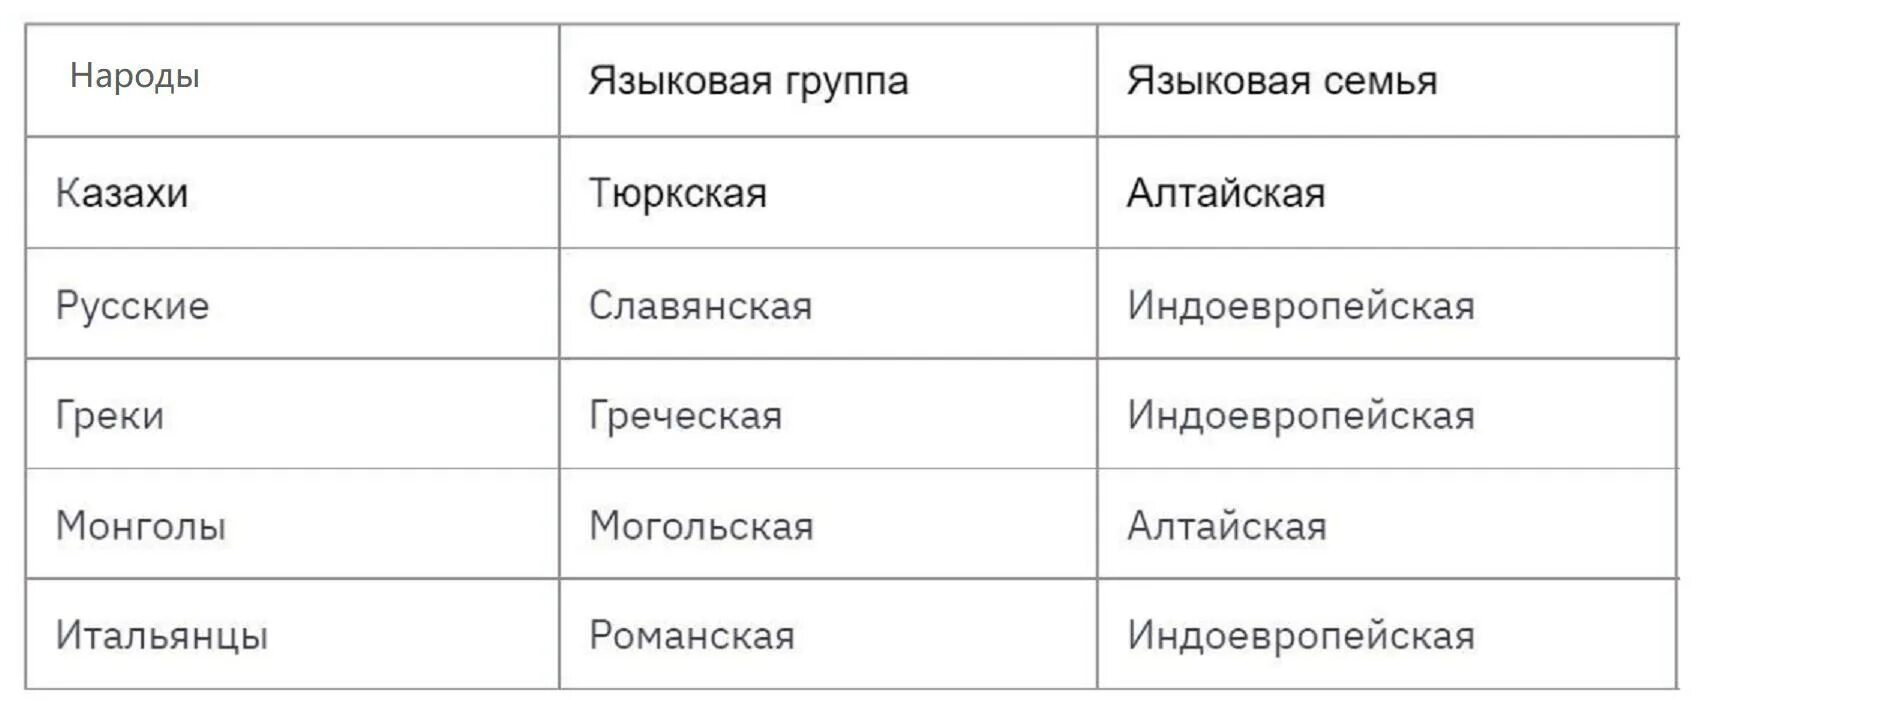 Таблица языковая семья языковая группа народы. Языковые семьи языковые группы народы таблица. Языковая семья народы таблица. Языковая семья России таблица.